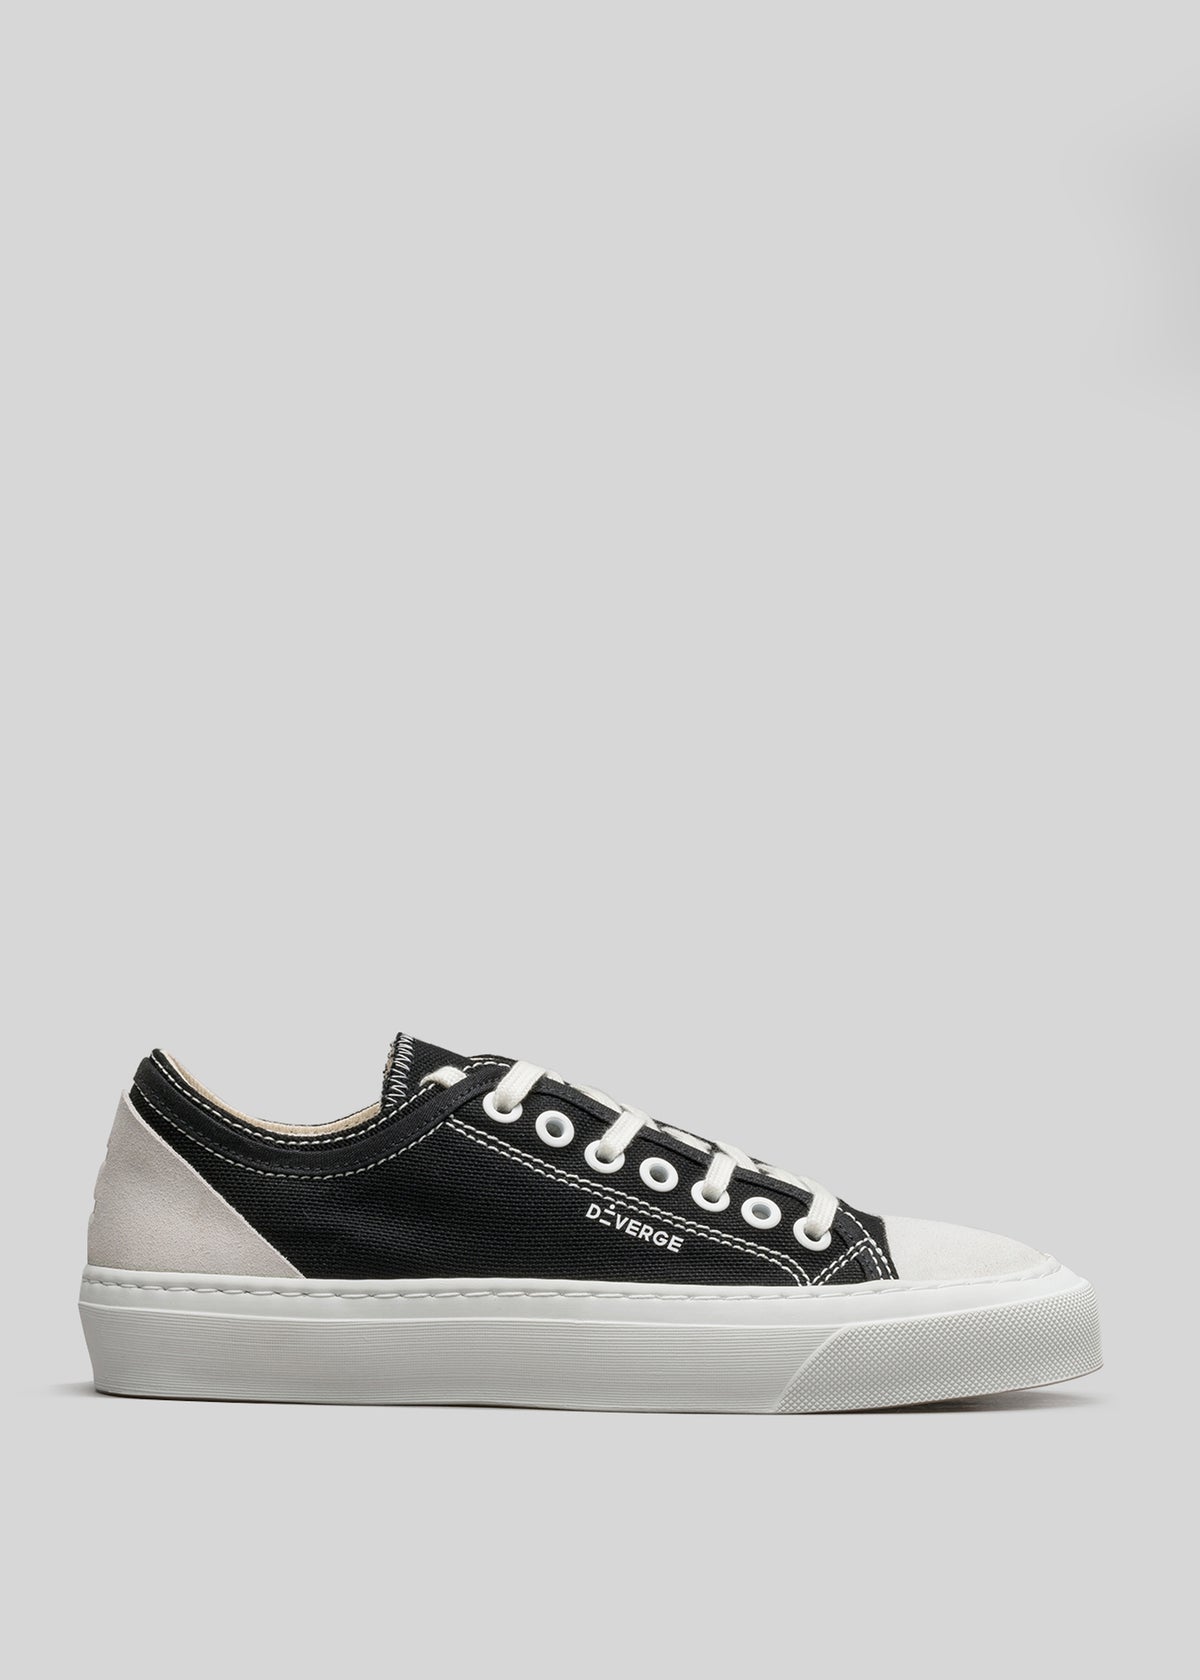 V2 Full Color Sneaker low-top in tela nera personalizzata su sfondo grigio chiaro.